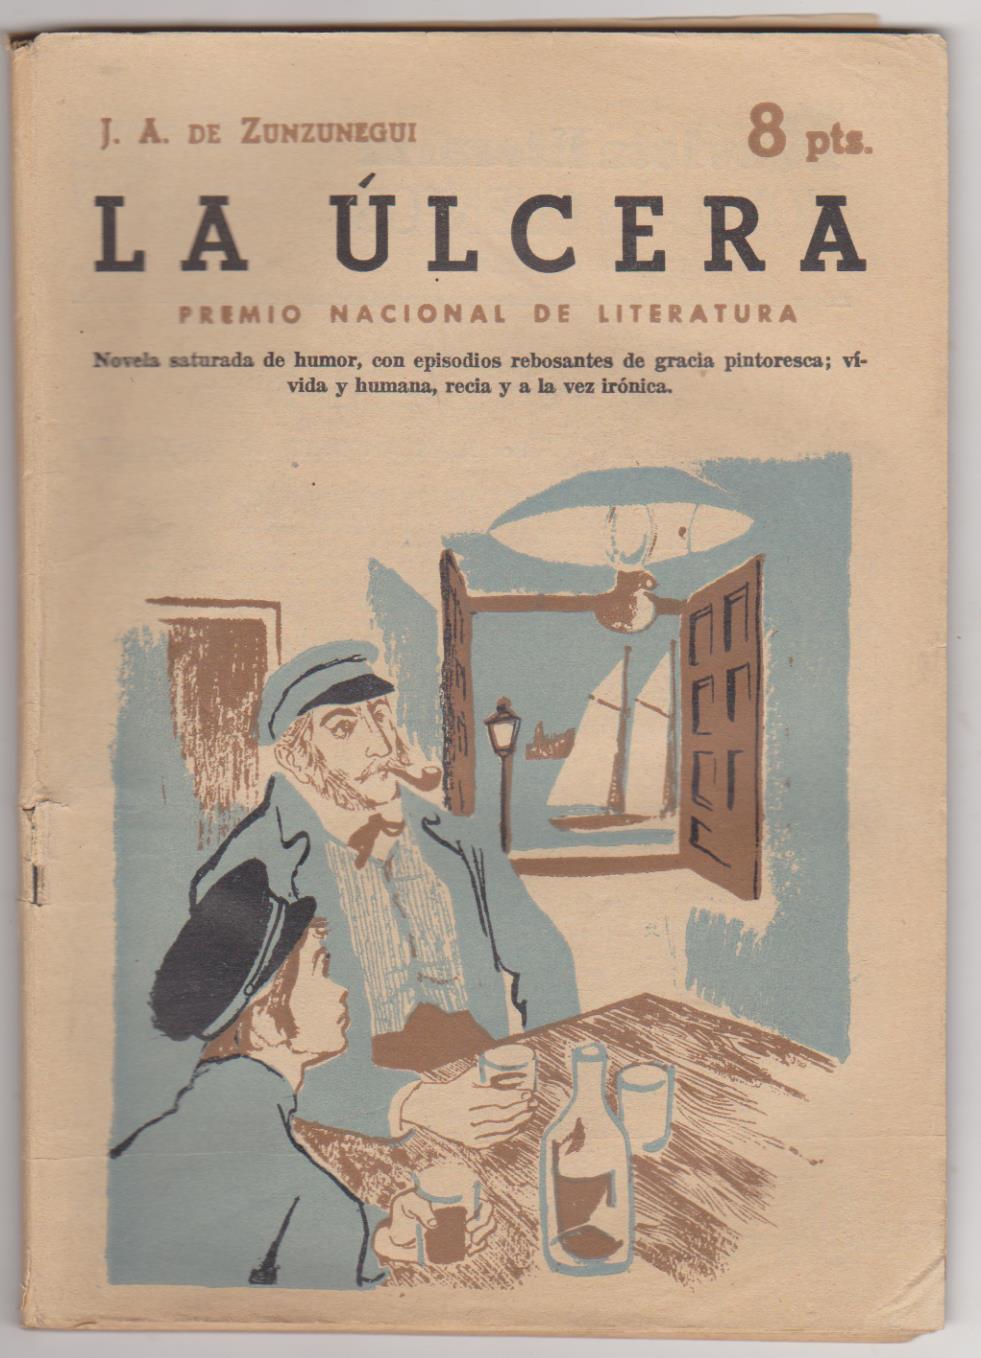 Revista Literaria nº 1547. J. A. de Zunzunegui. La Úlcera. Año 1961